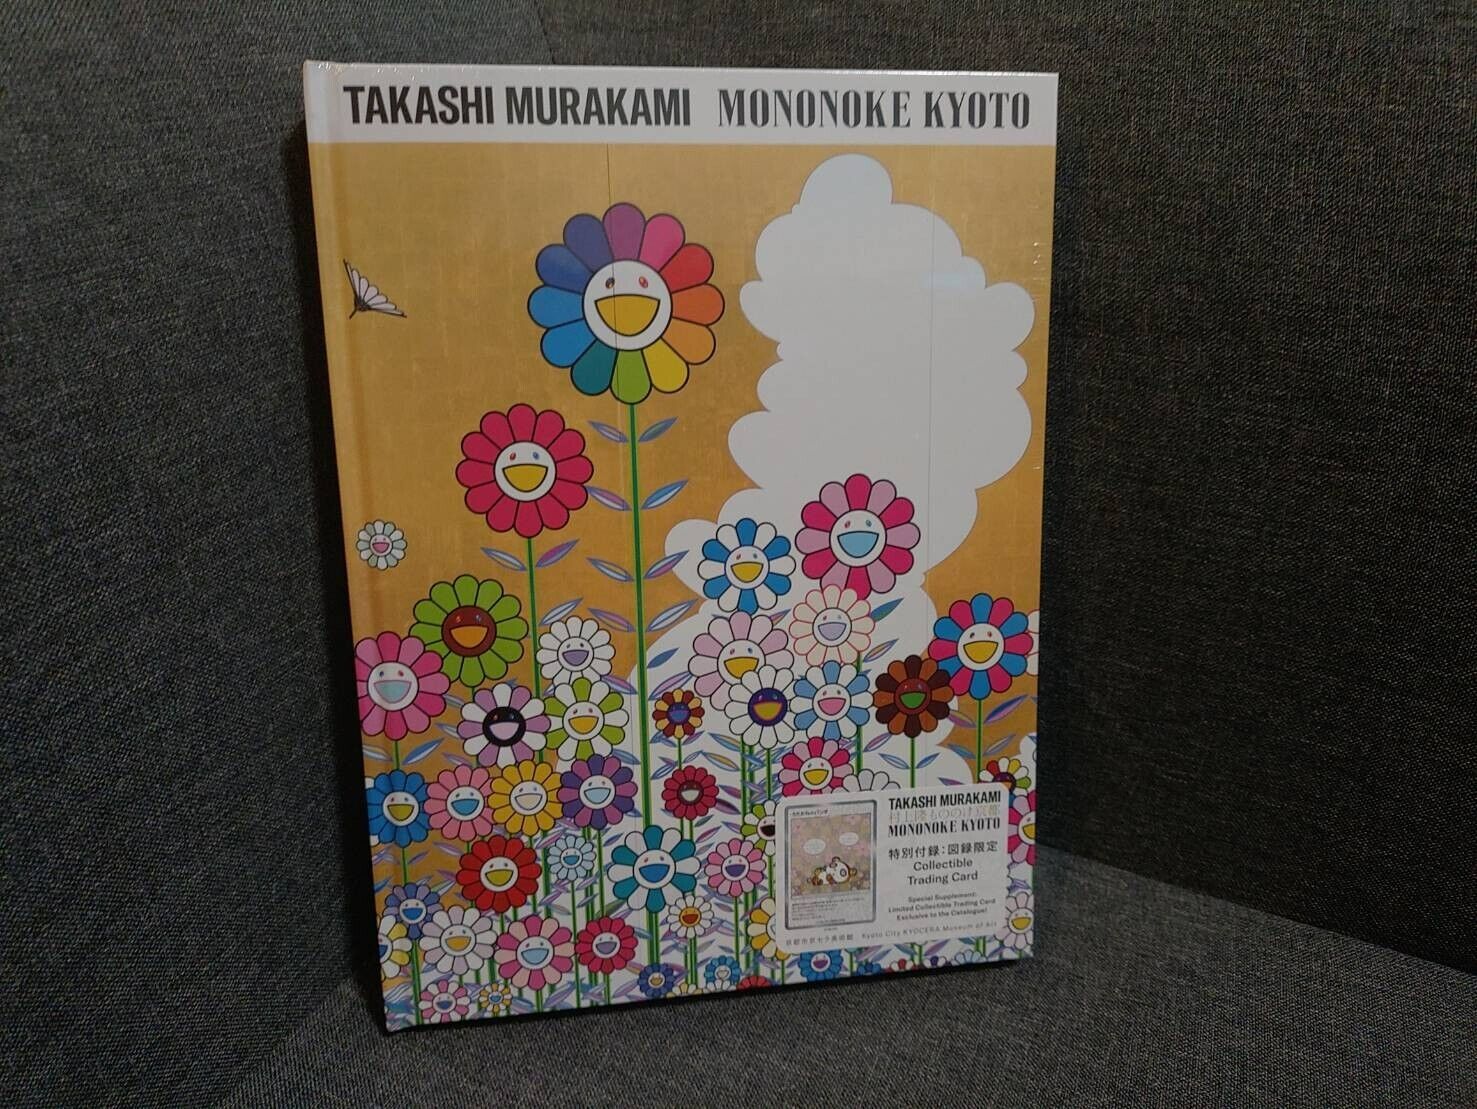 Kyoto Municipal Museum of Art 90th Anniversary Exhibition “Takashi Murakami